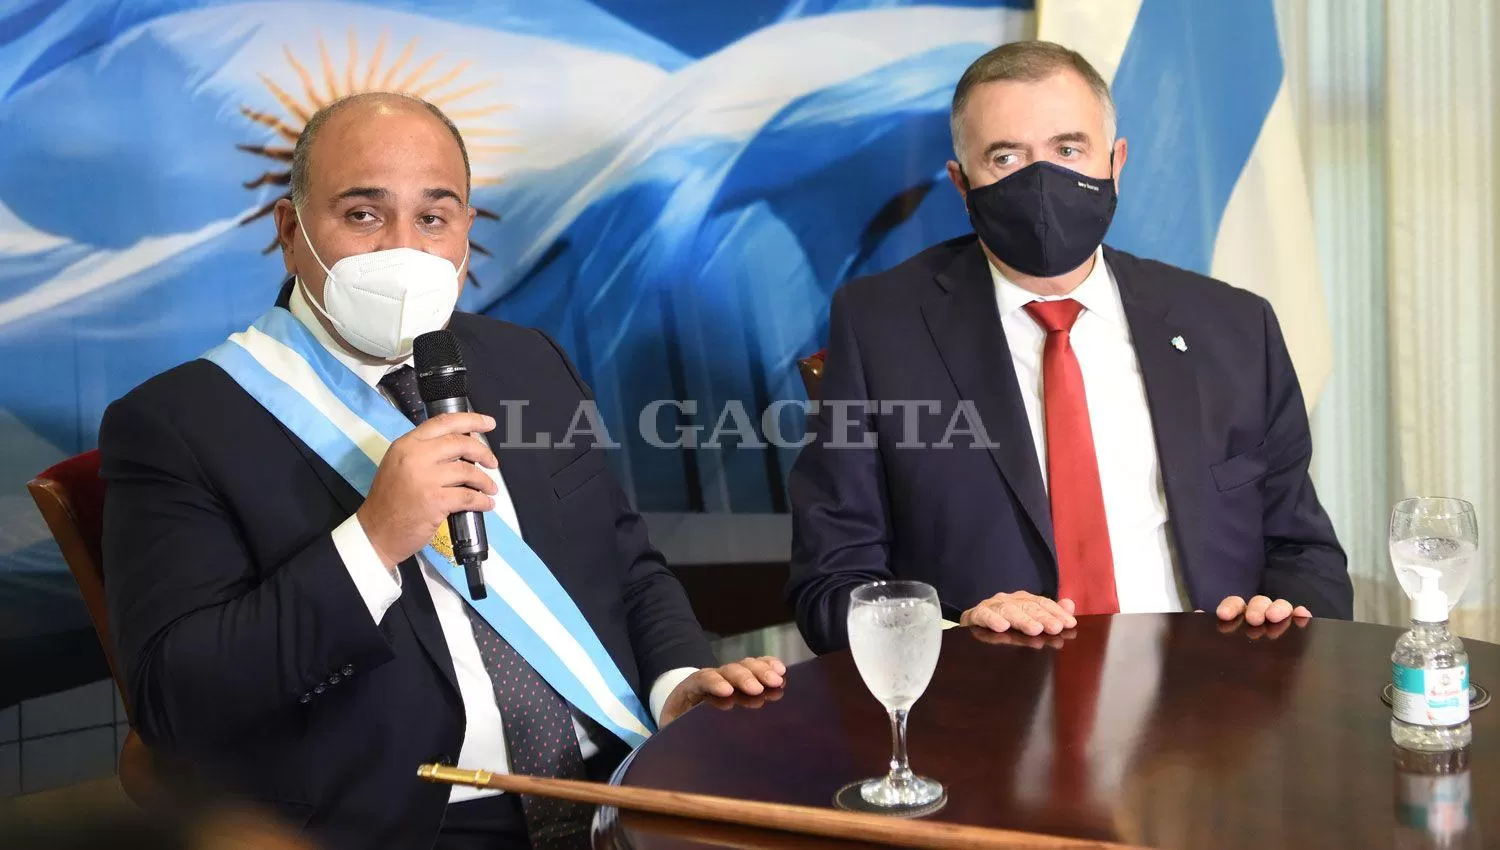 OTROS TIEMPOS. Manzur y Jaldo compartieron un acto, antes de la pelea desencadenada por la elección del  ombudsman. FOTO DE ARCHIVO, LA GACETA. 